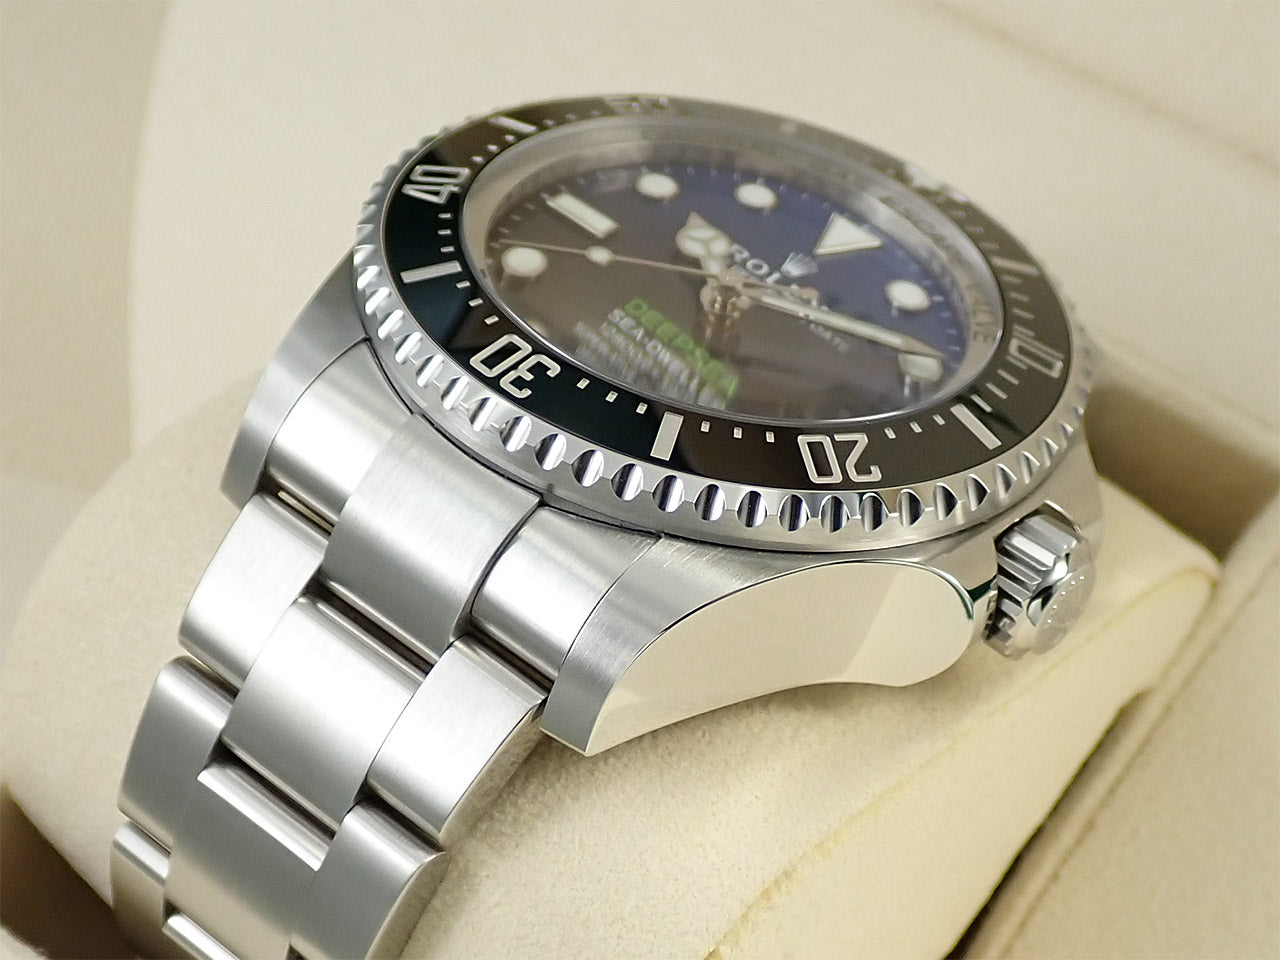 Rolex Sea-Dweller Deepsea D-BLUE &lt;Warranty, Box, etc.&gt;